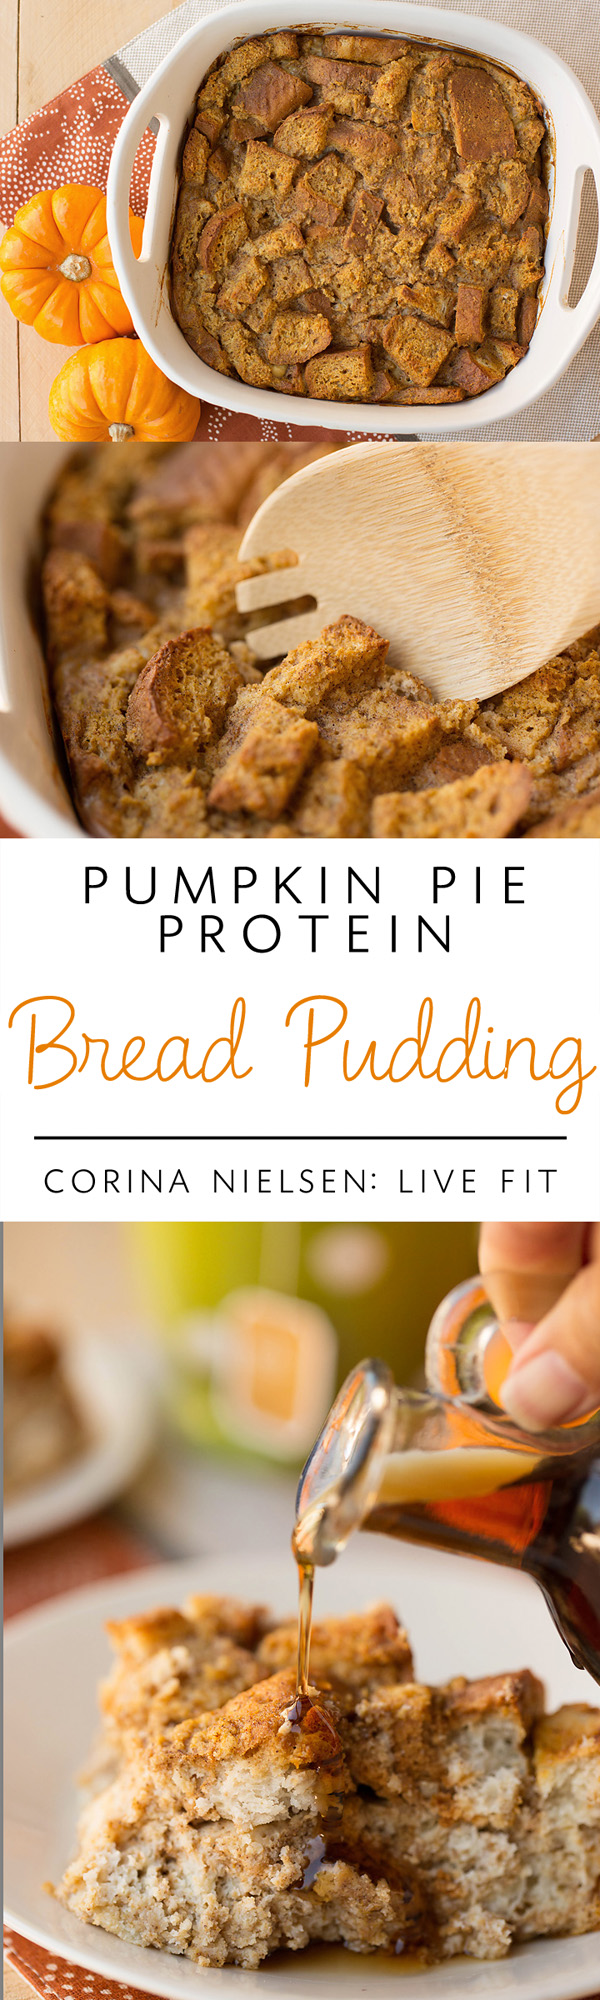 pumpkin-pie-protein-bread-pudding